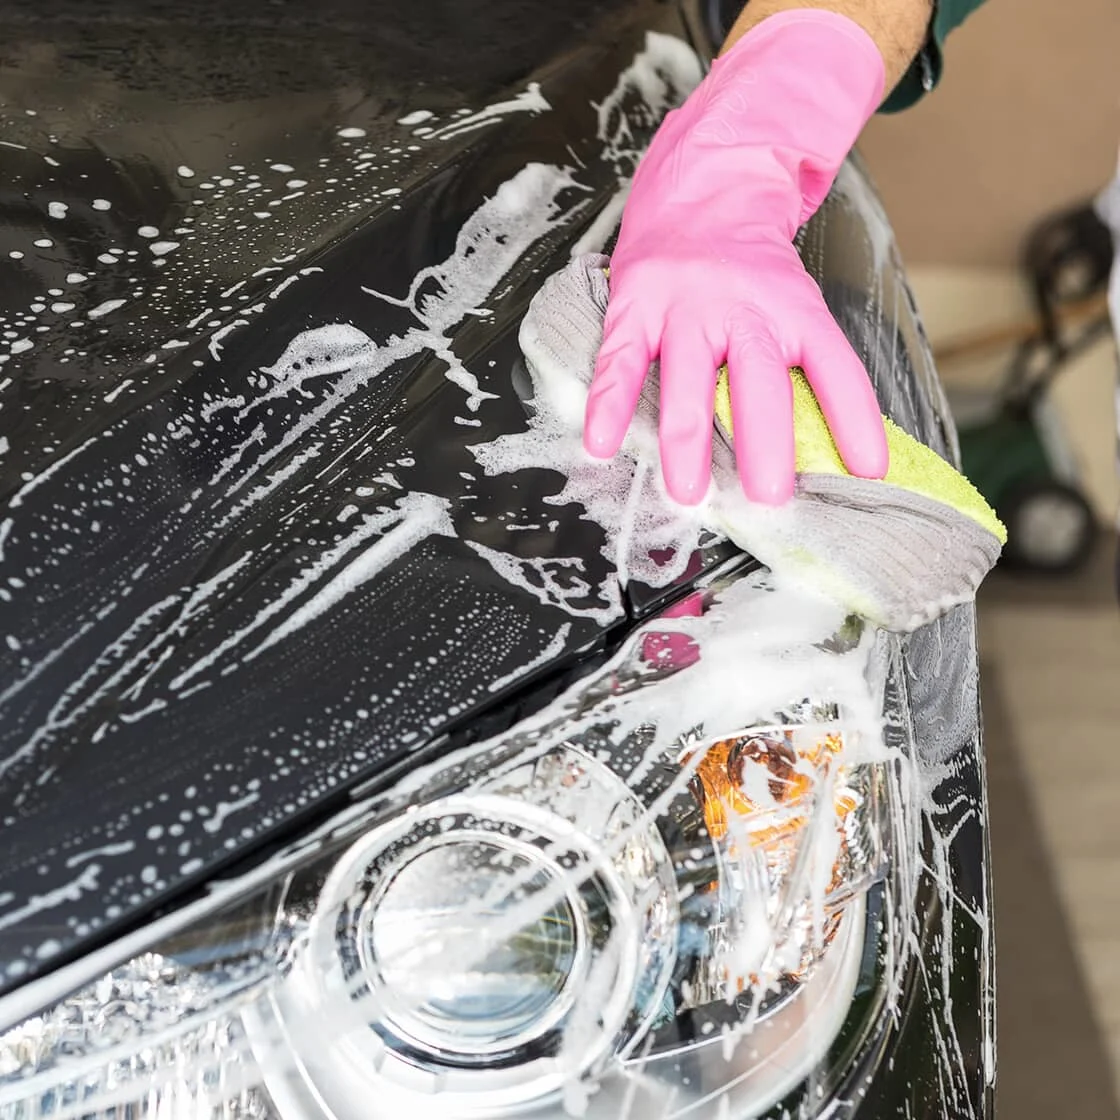 Washing car with sponge